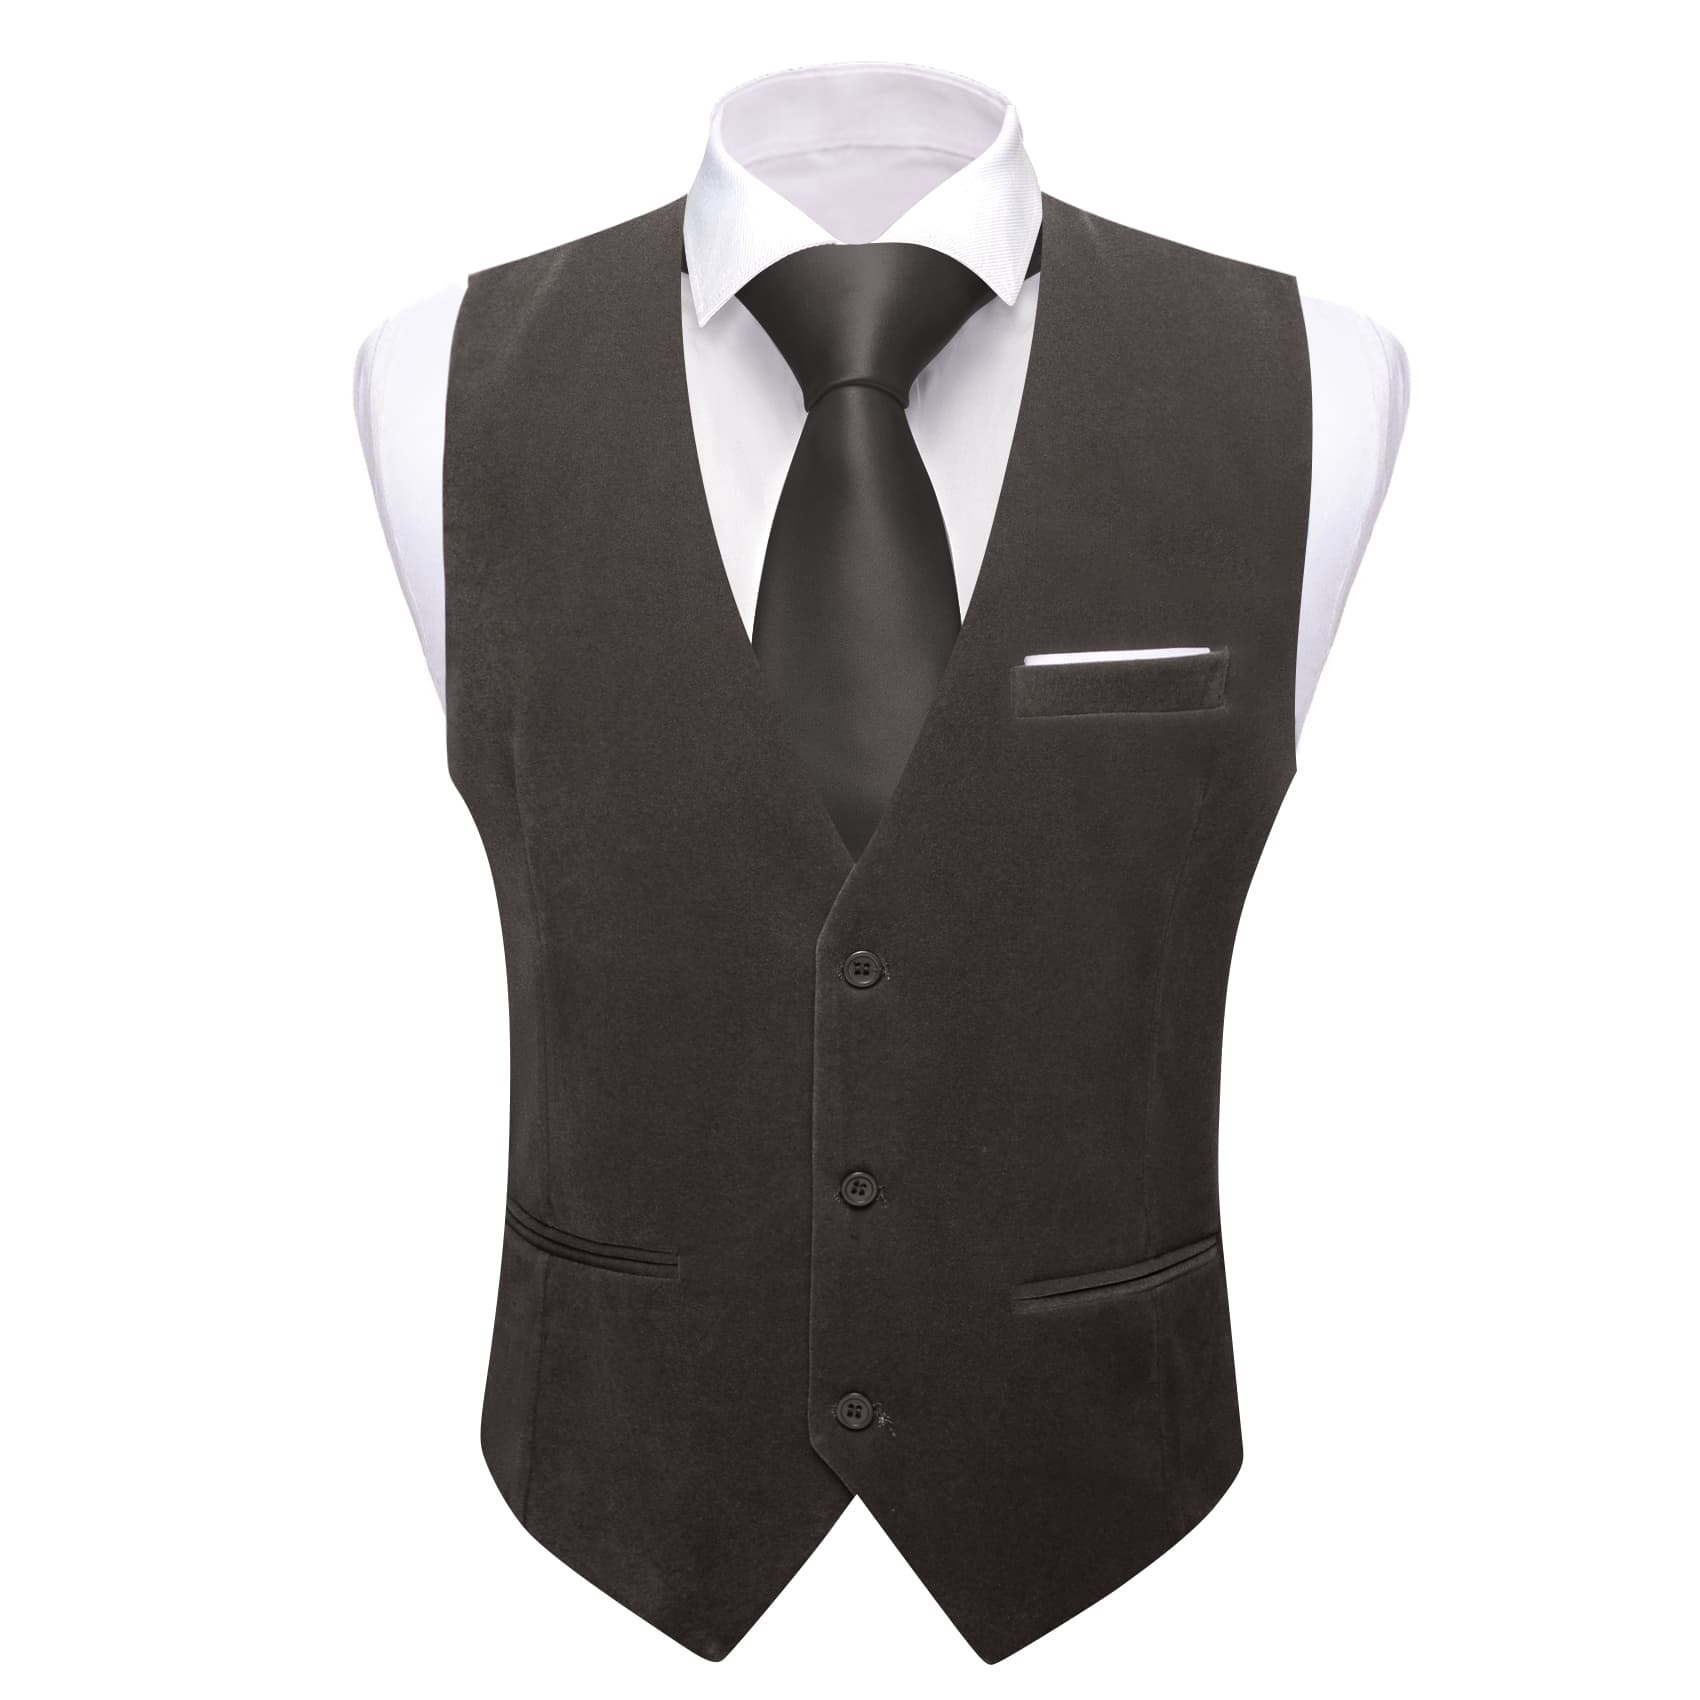 Barry Wang Waistcoat for Men Solid Shadow Grey Velvet Vest